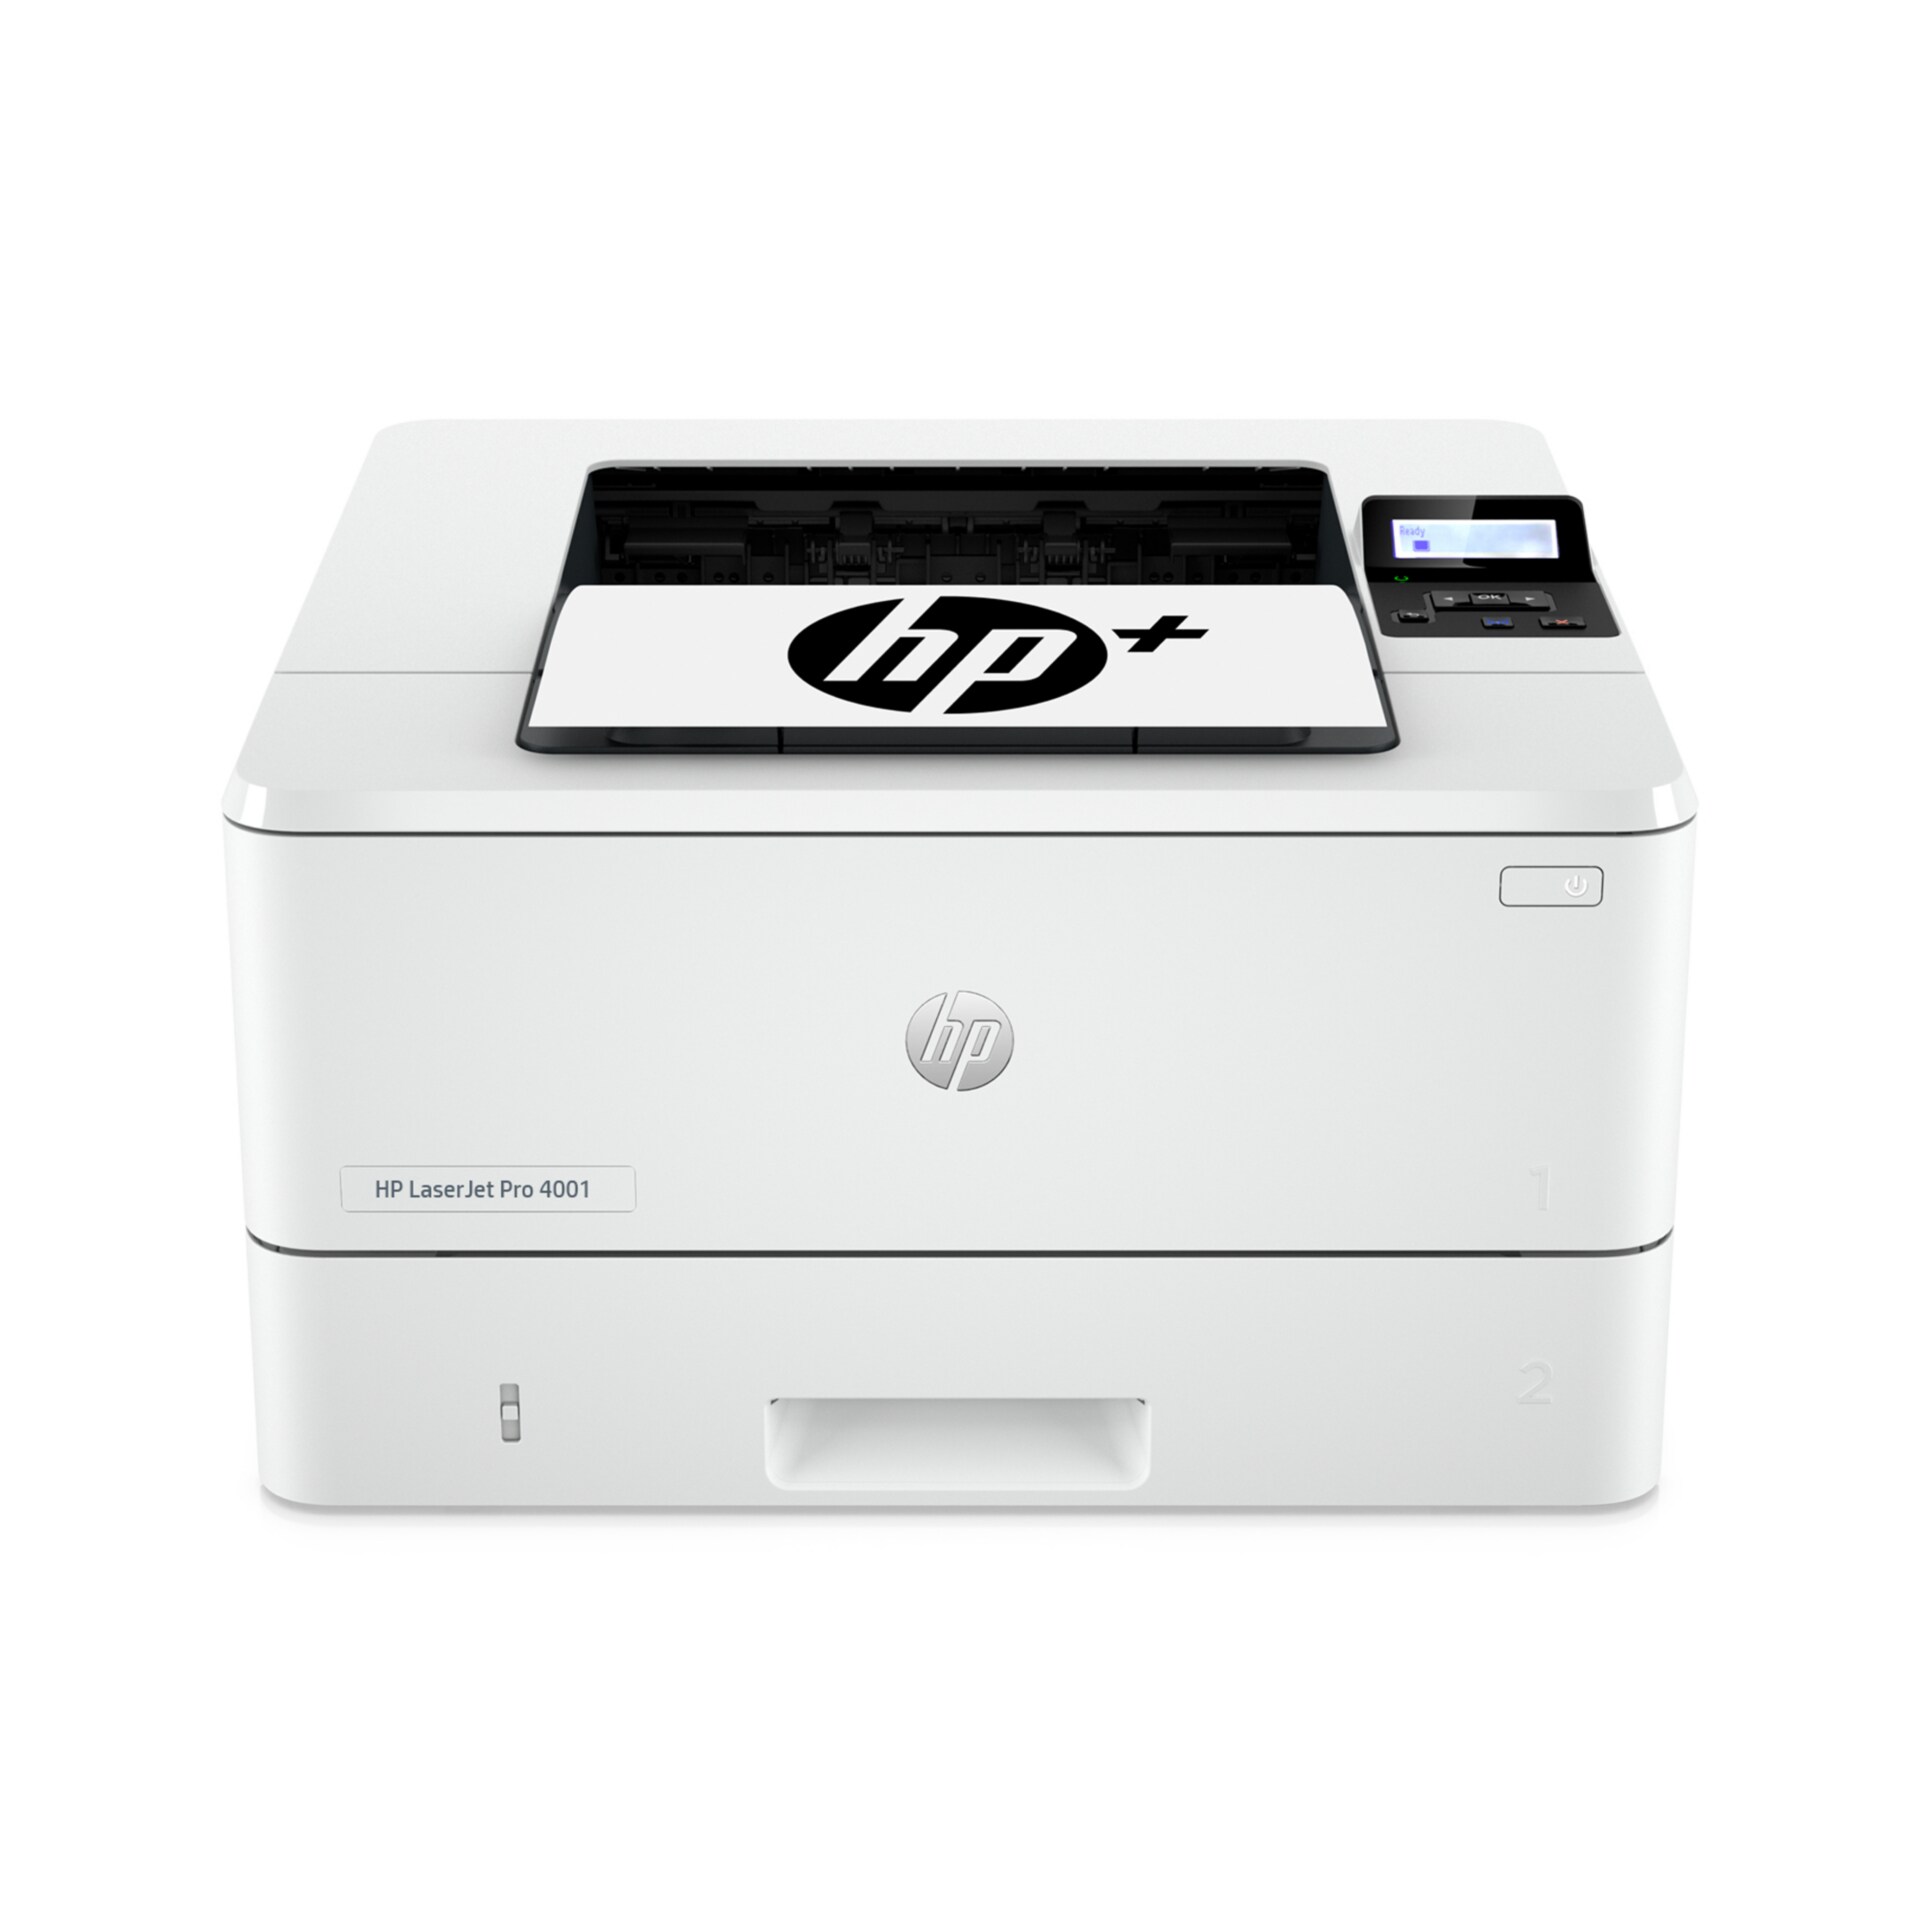 HP LaserJet Pro 4001dwe - printer - B/W - laser - with HP+